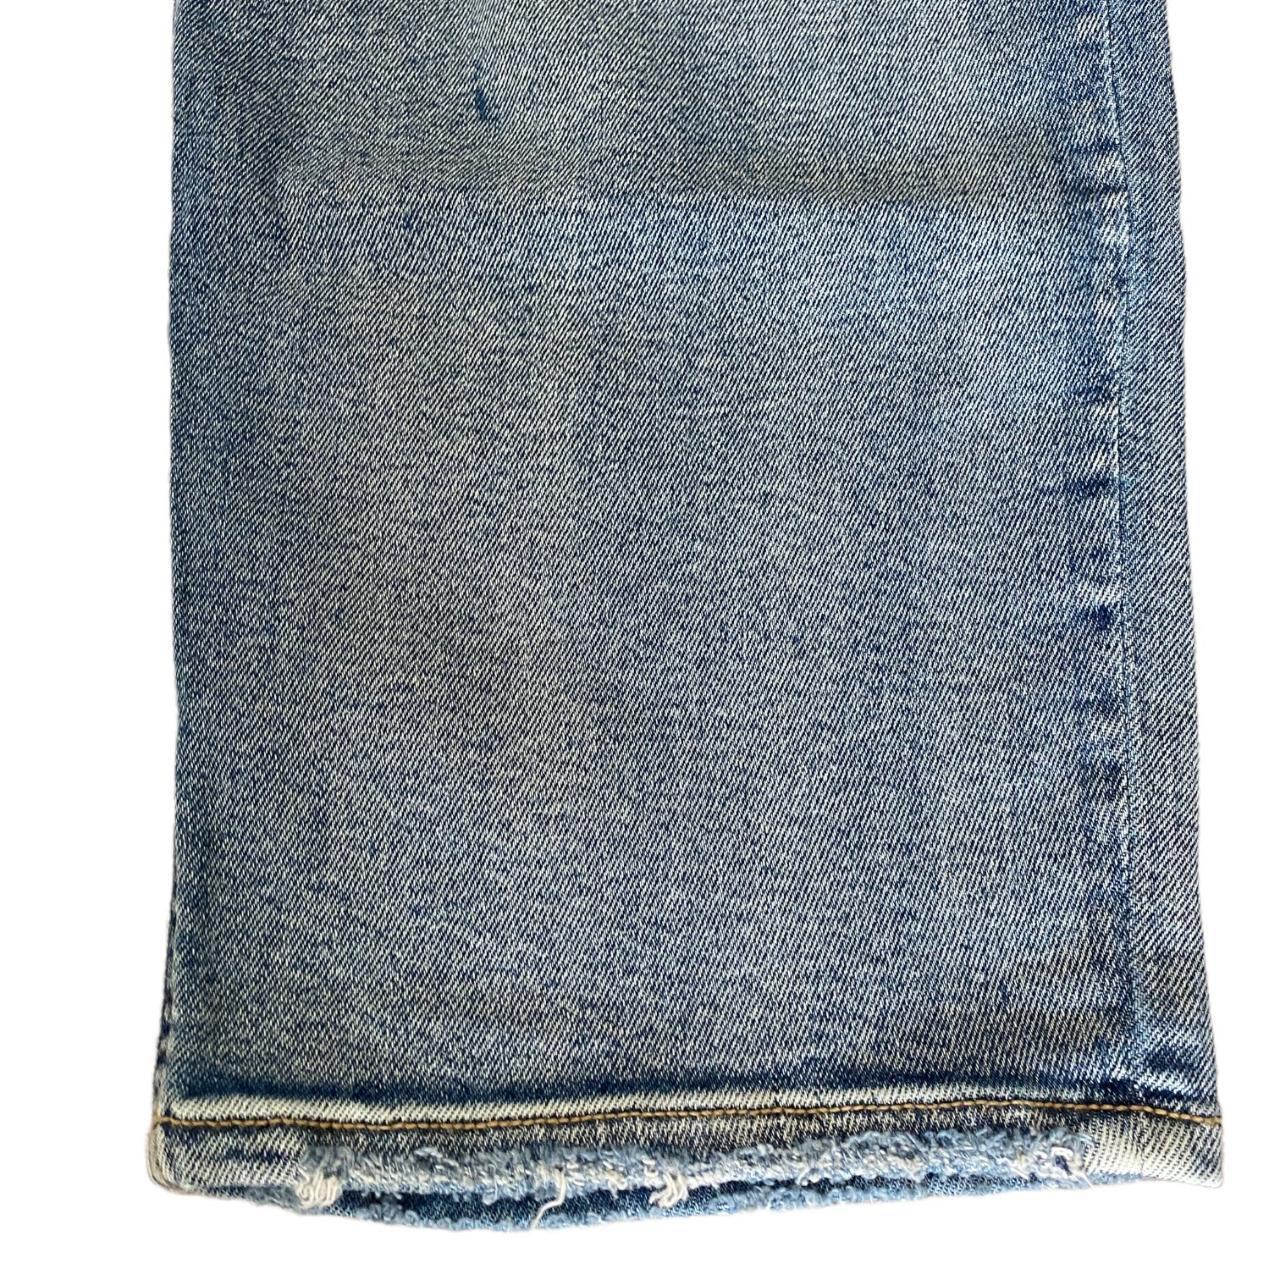 Product Image 4 - Ava & Viv Women’s Jeans